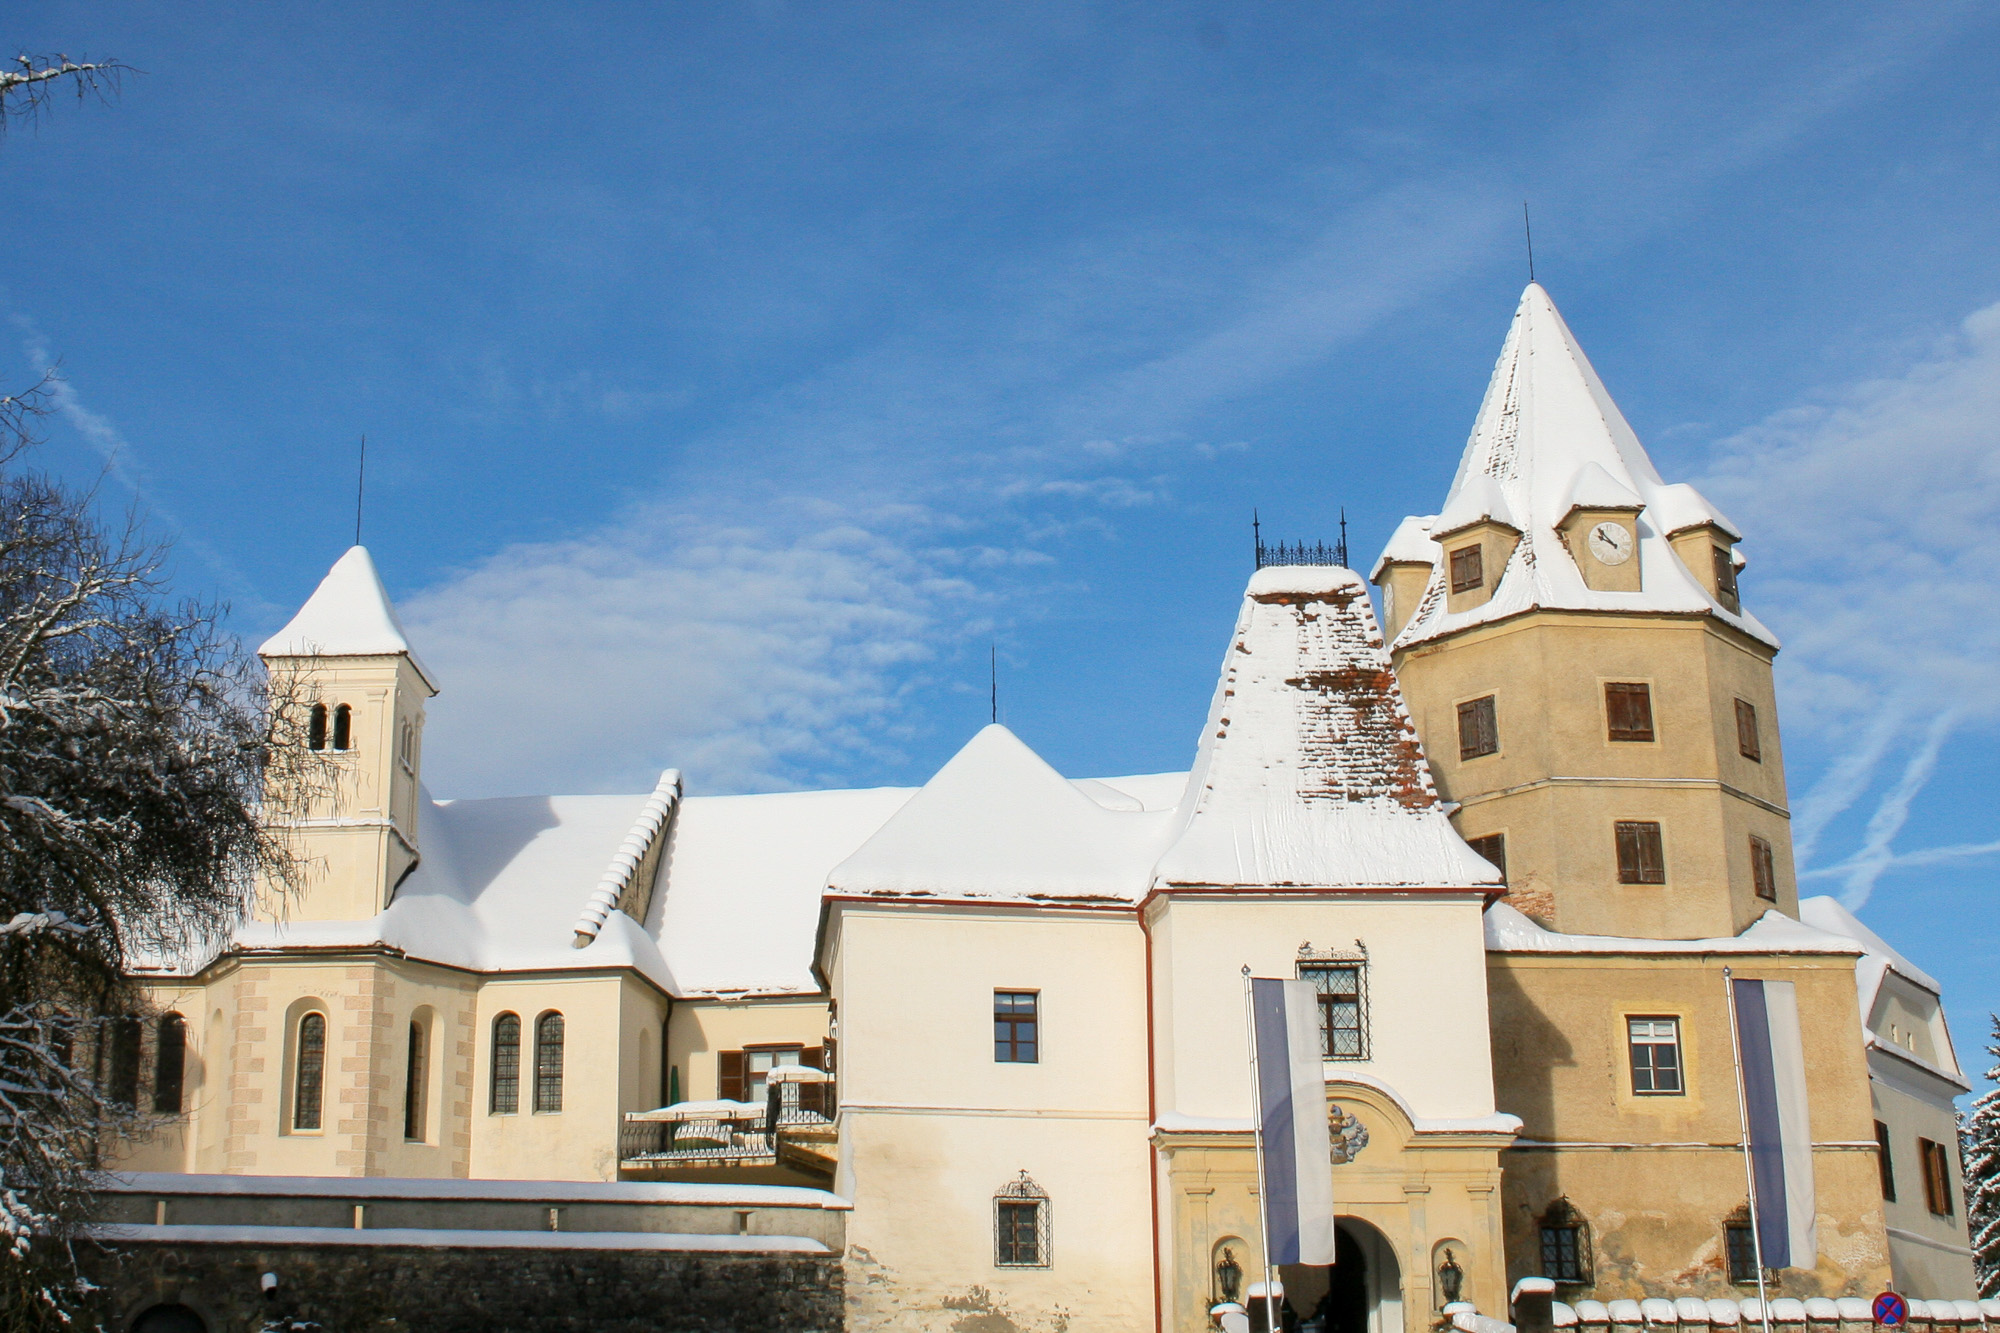 Schloss Kornberg im Schnee bei blauem Himmel